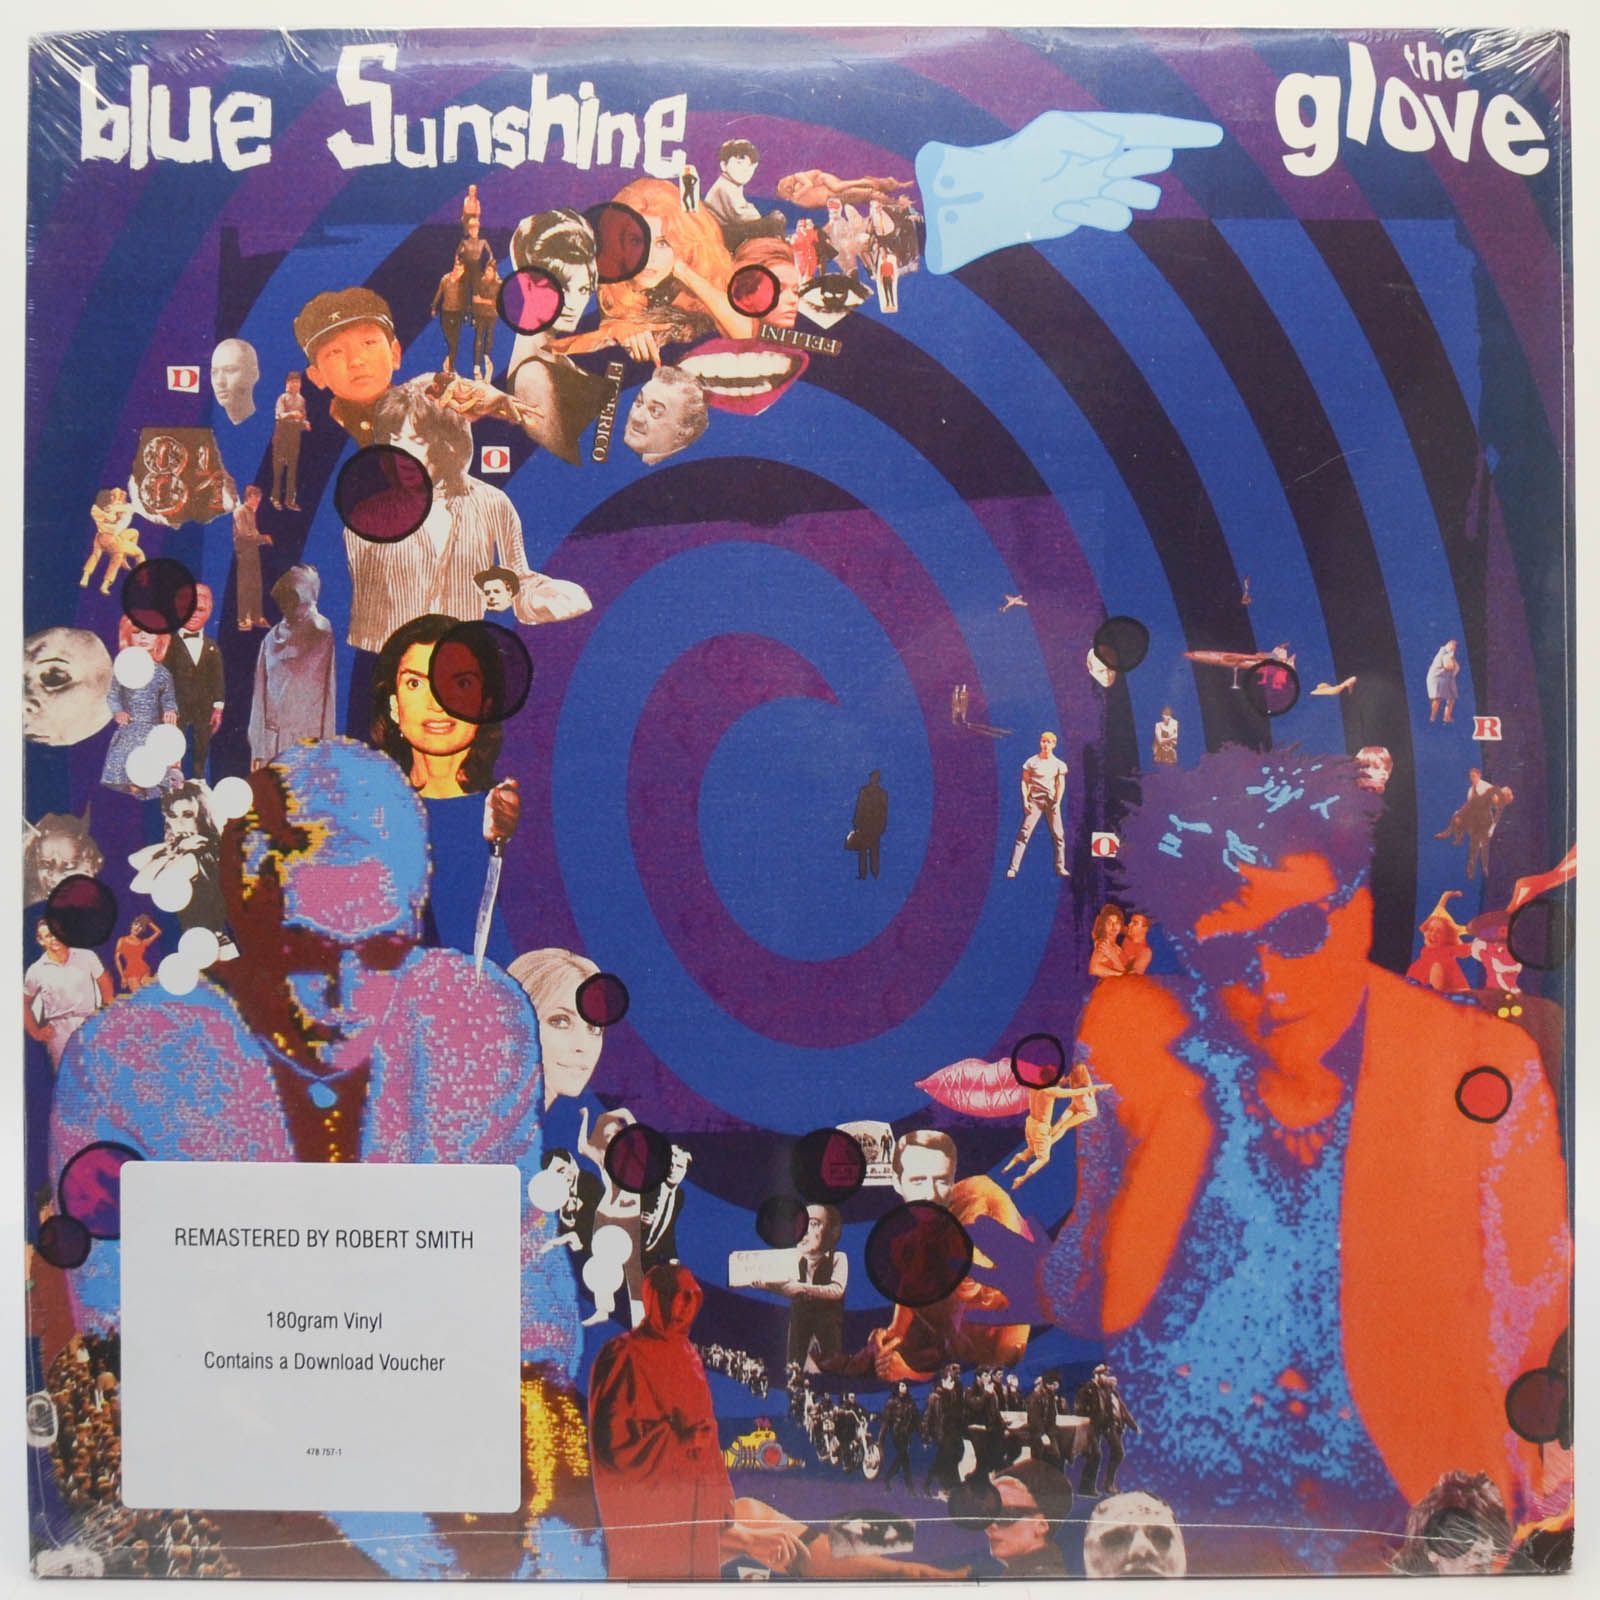 Glove — Blue Sunshine, 1983